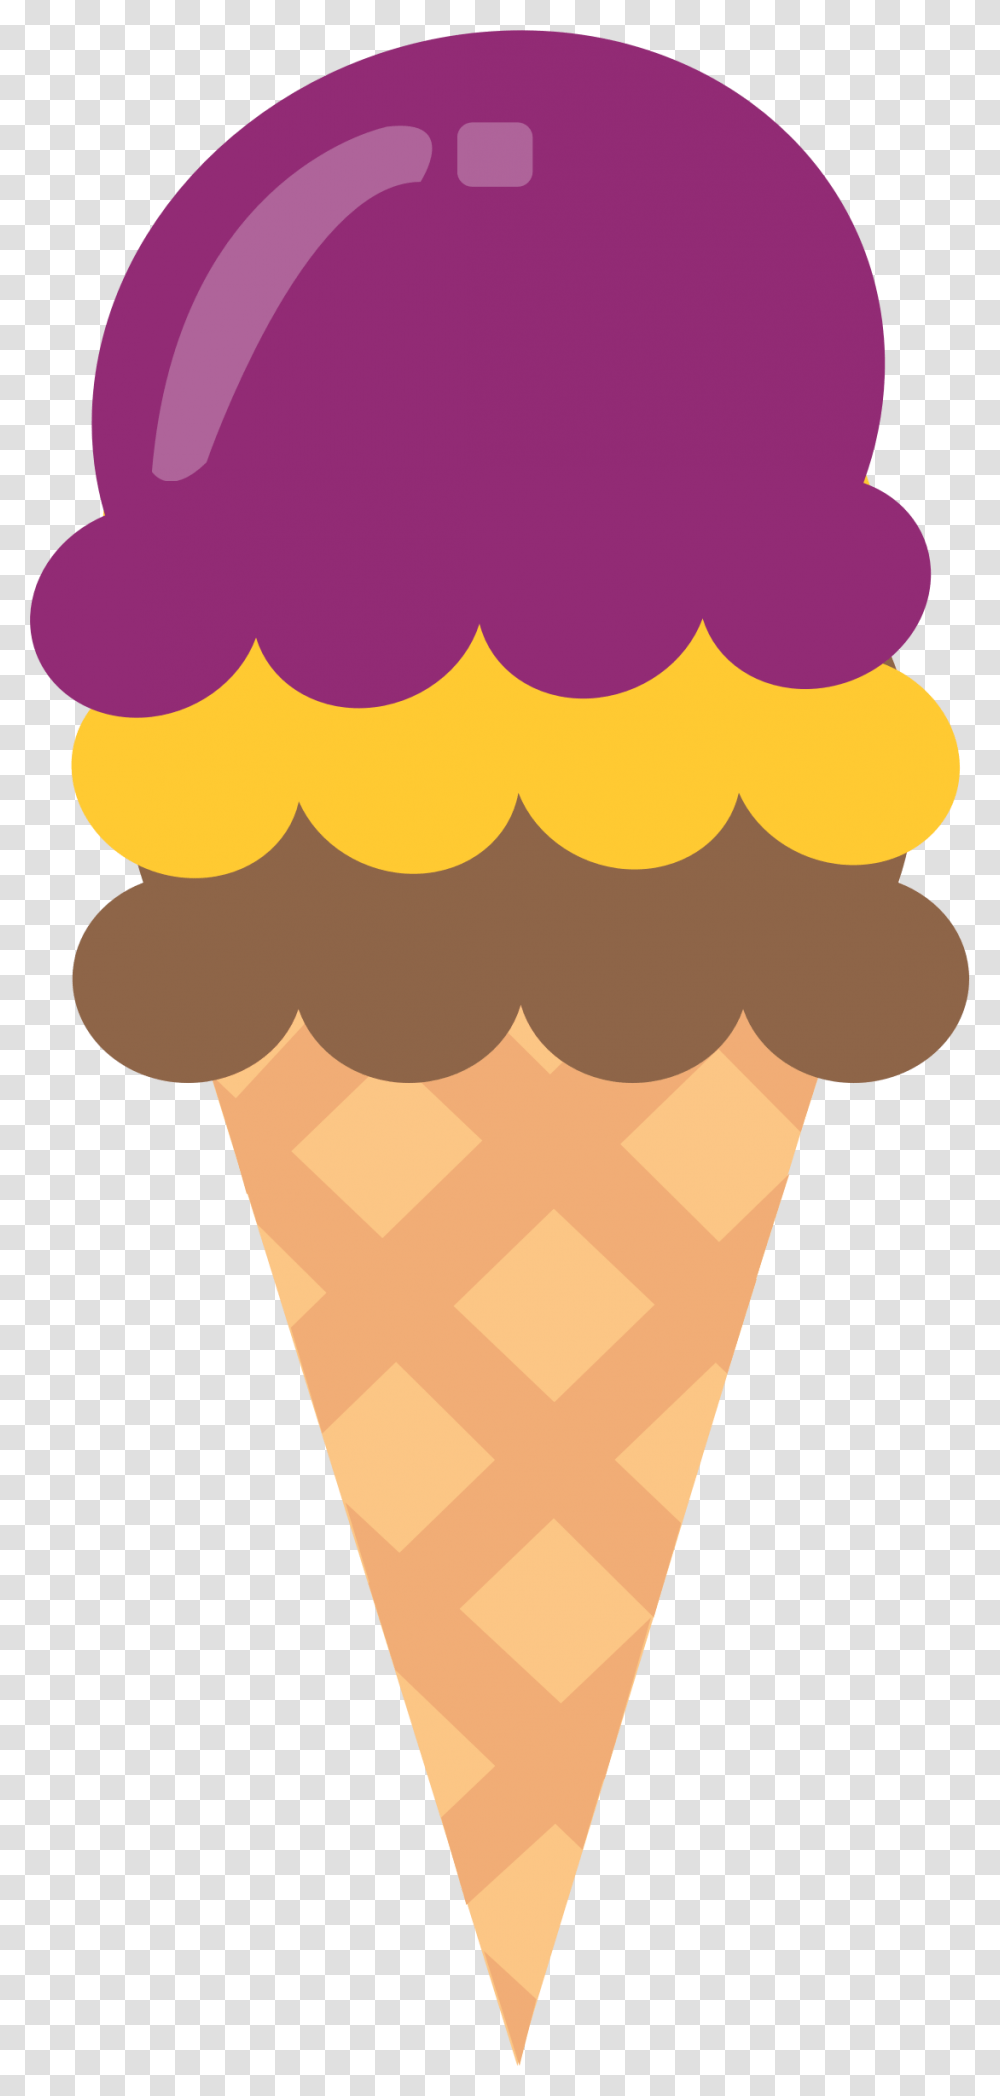 Clipart Ice Cream Cone Icecream Clipart, Dessert, Food, Creme, Baseball Cap Transparent Png